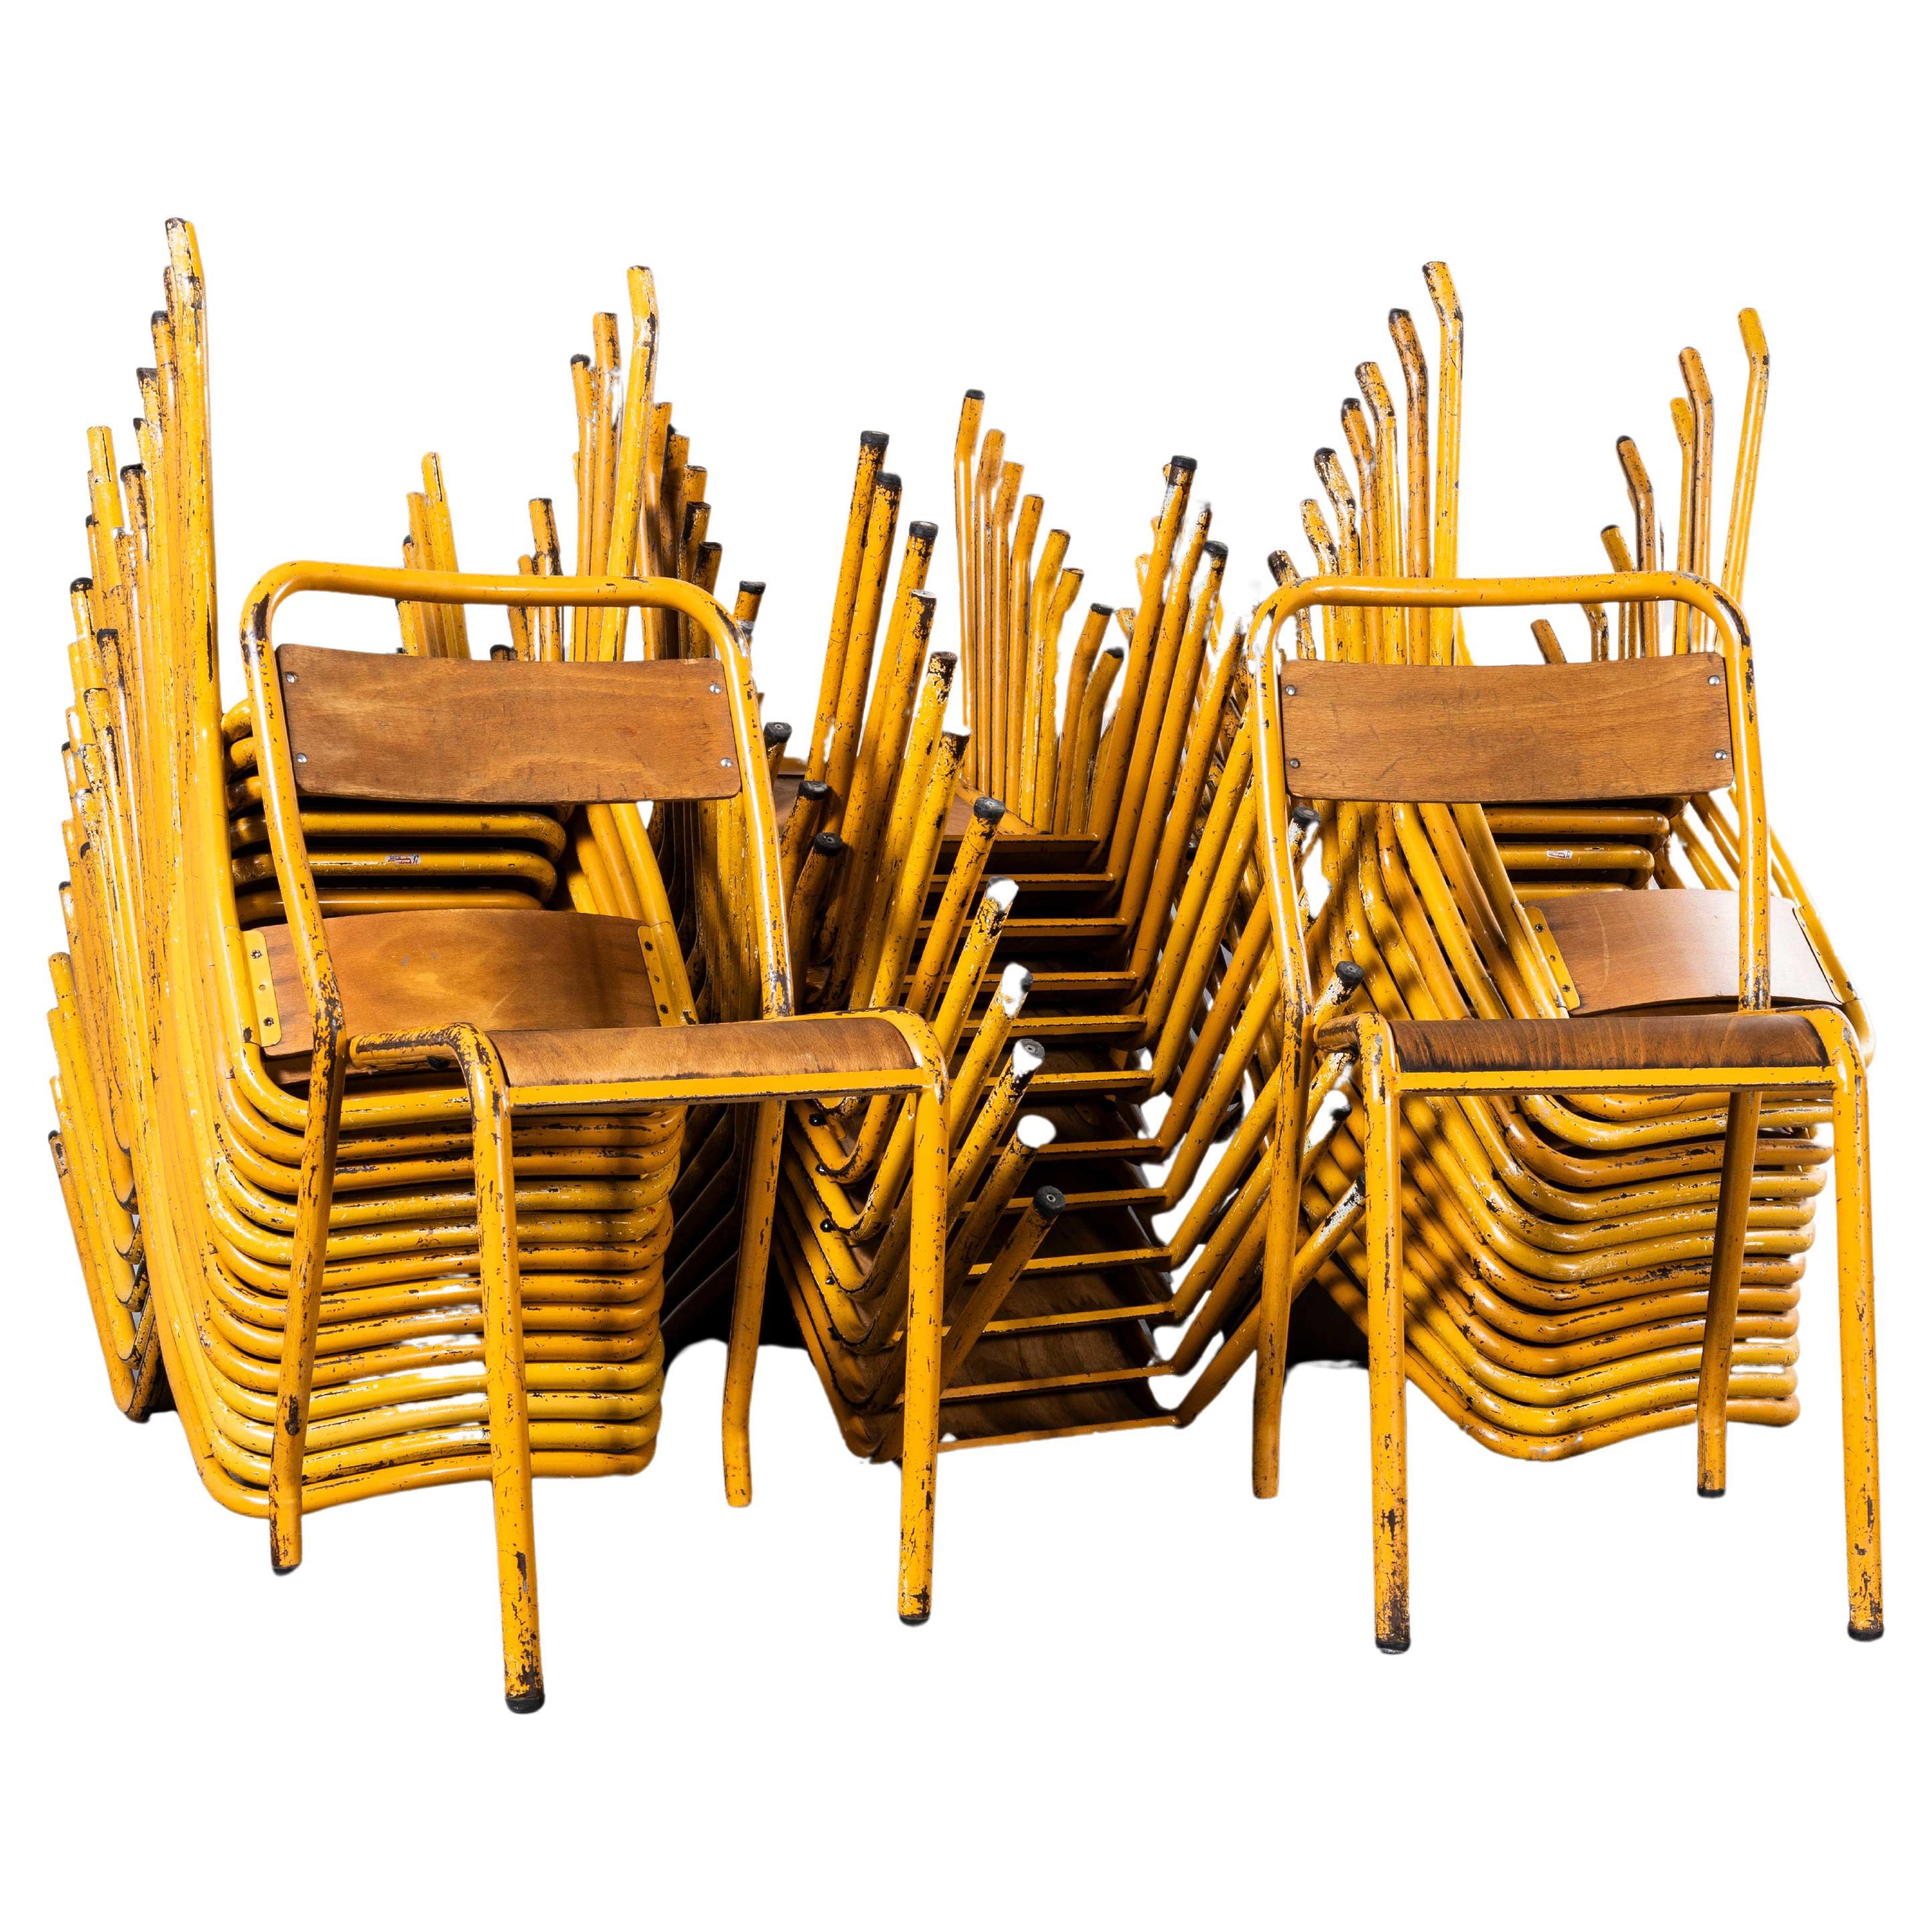 Chaise de salle à manger Bistro des années 1950 originale jaune Tolix française avec assise en bois et métal - Large 